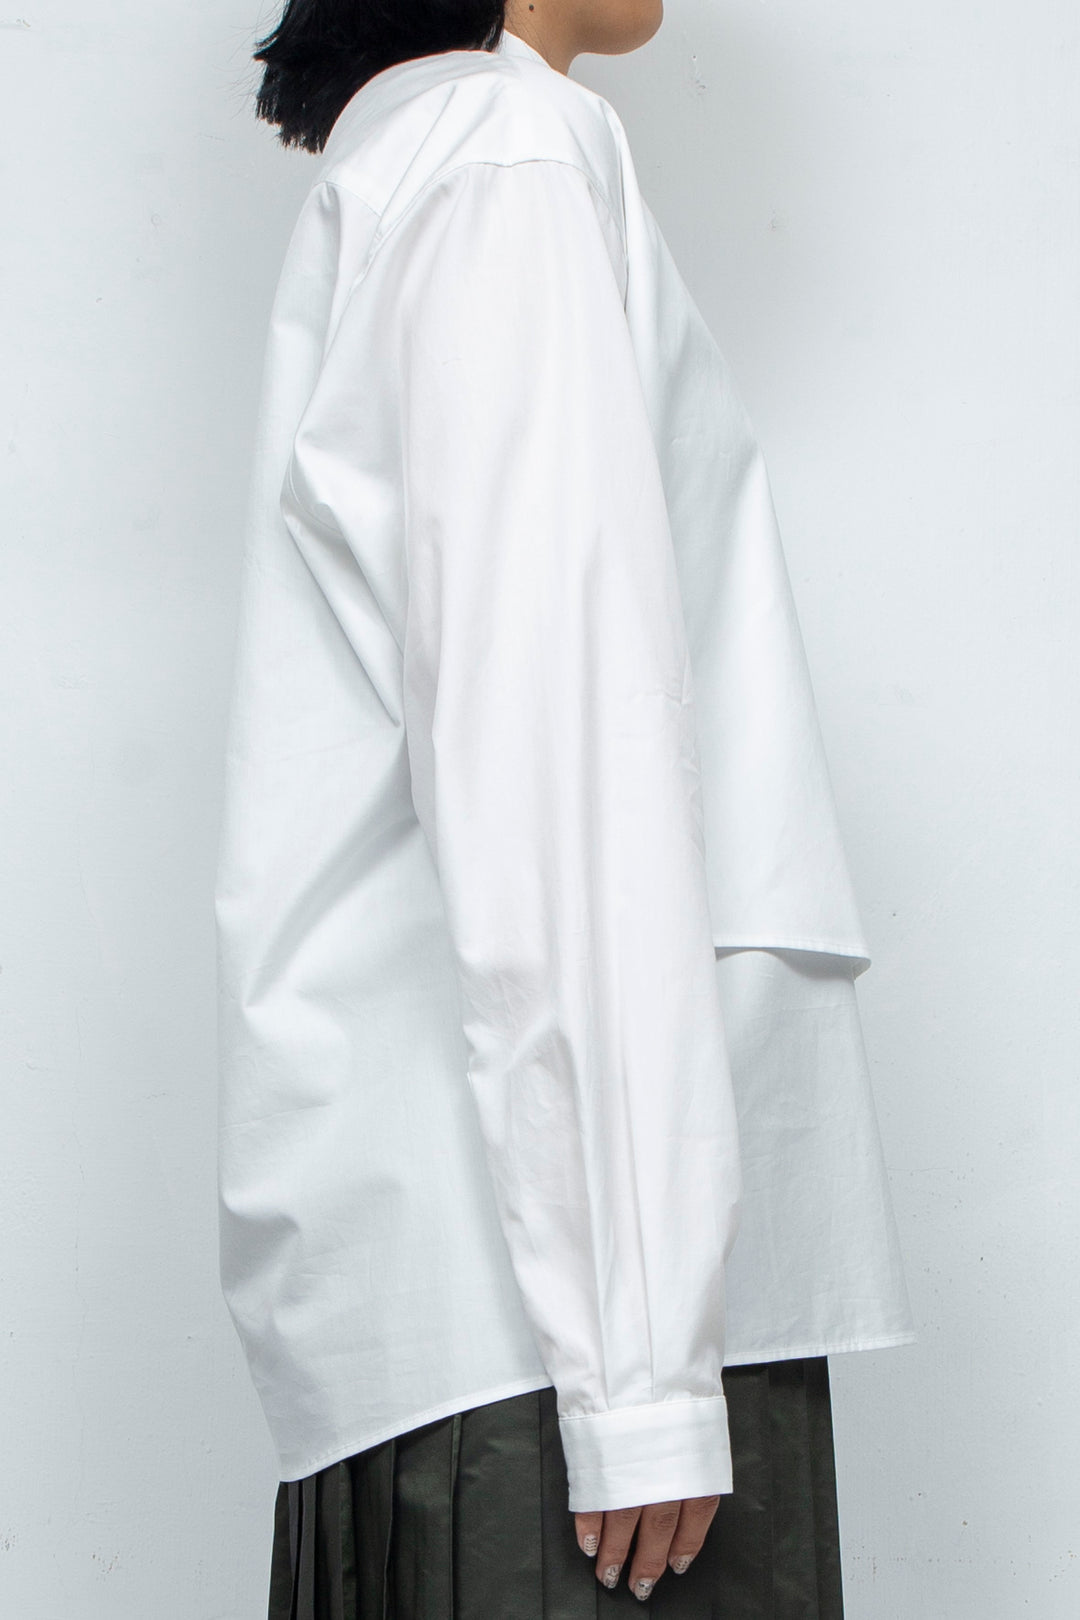 Layered White Shirt White